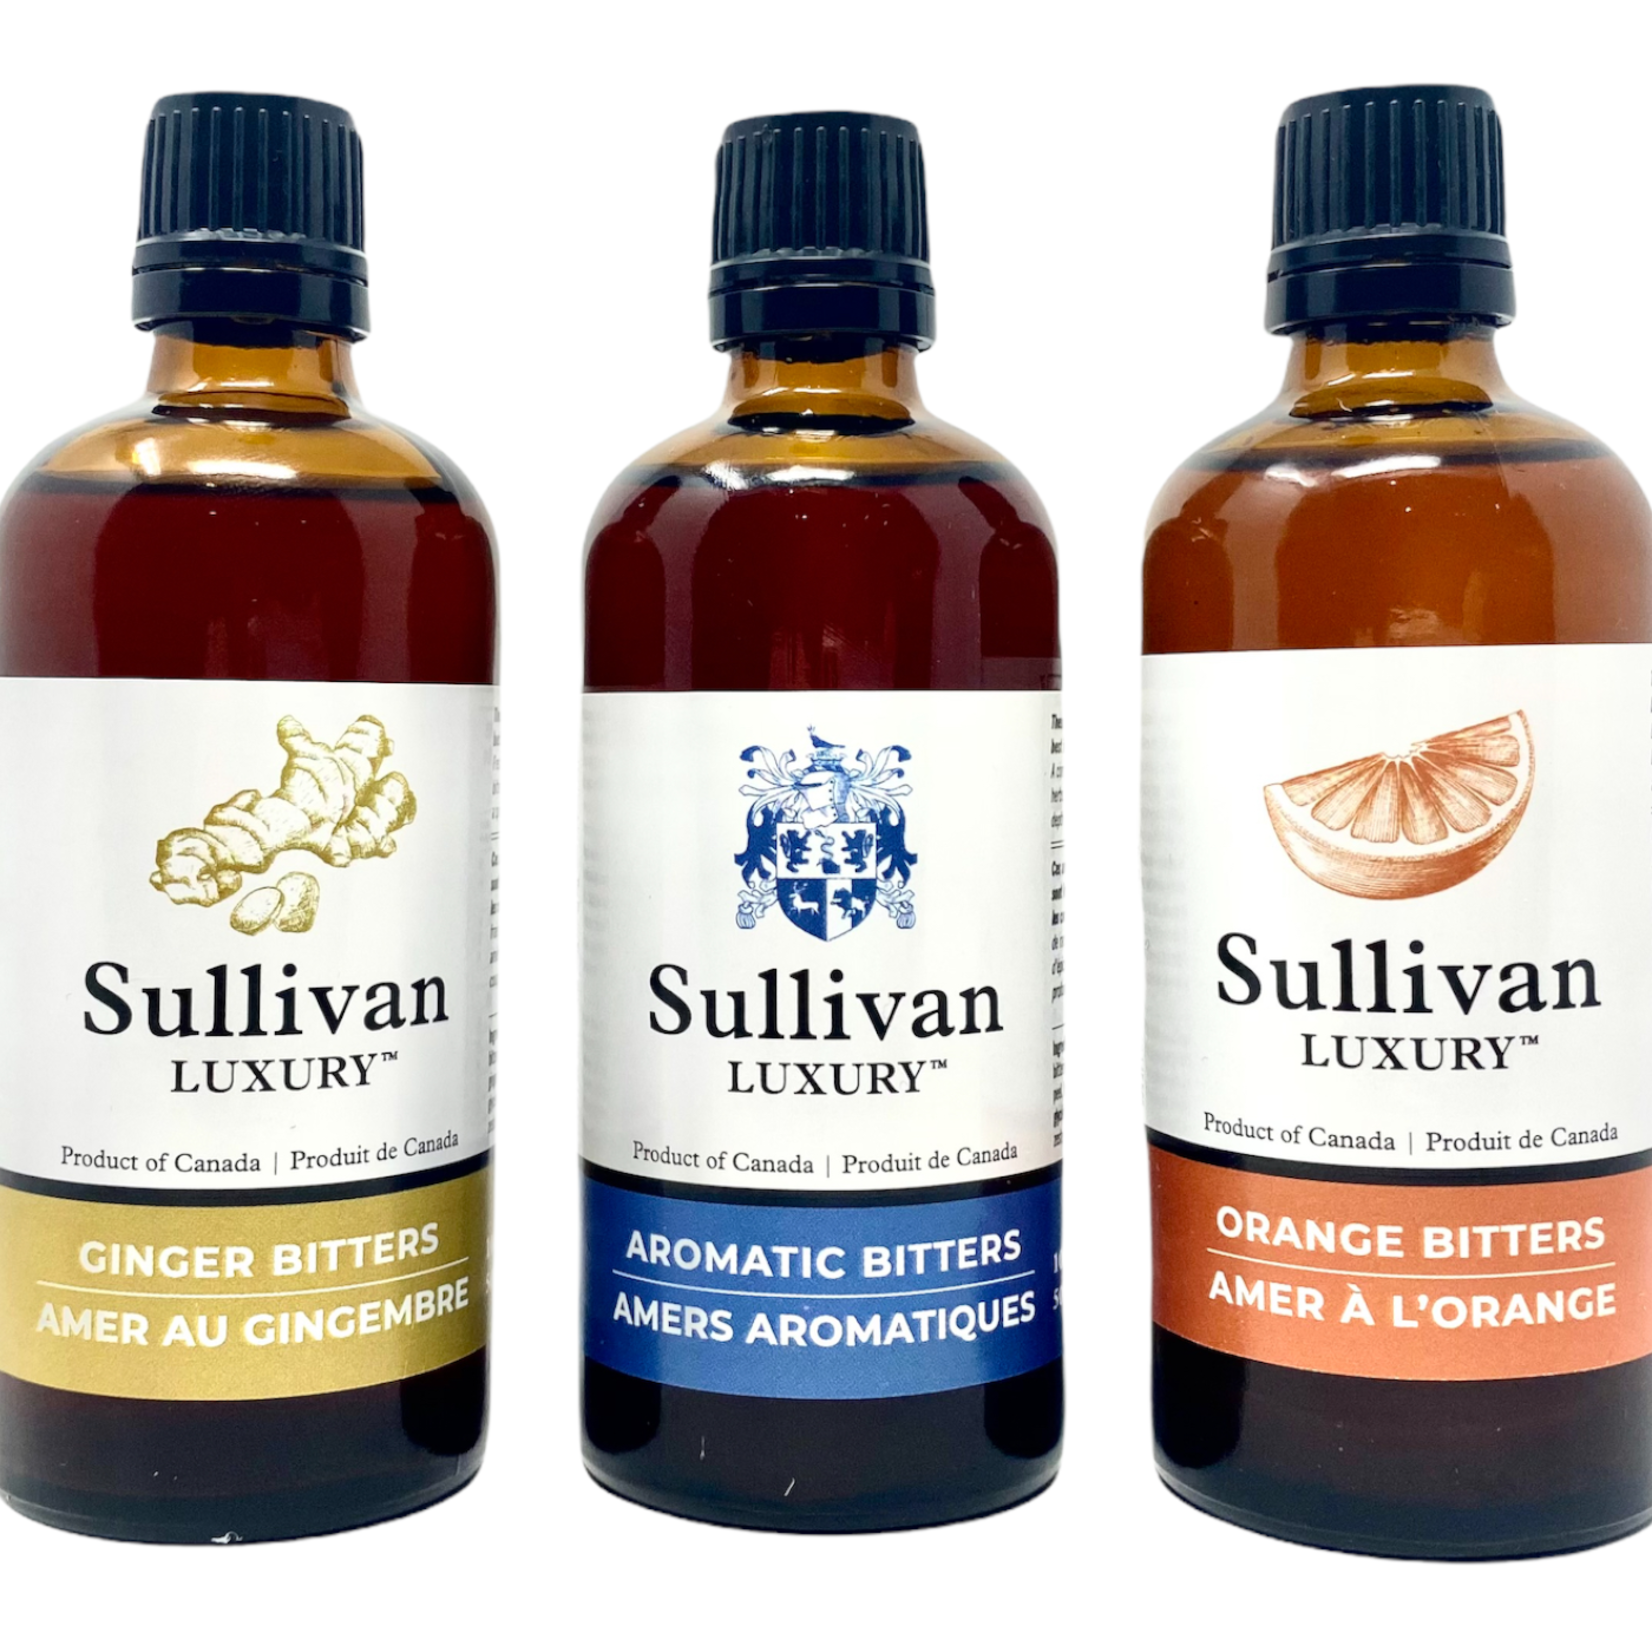 Bitters - Sullivan Luxury